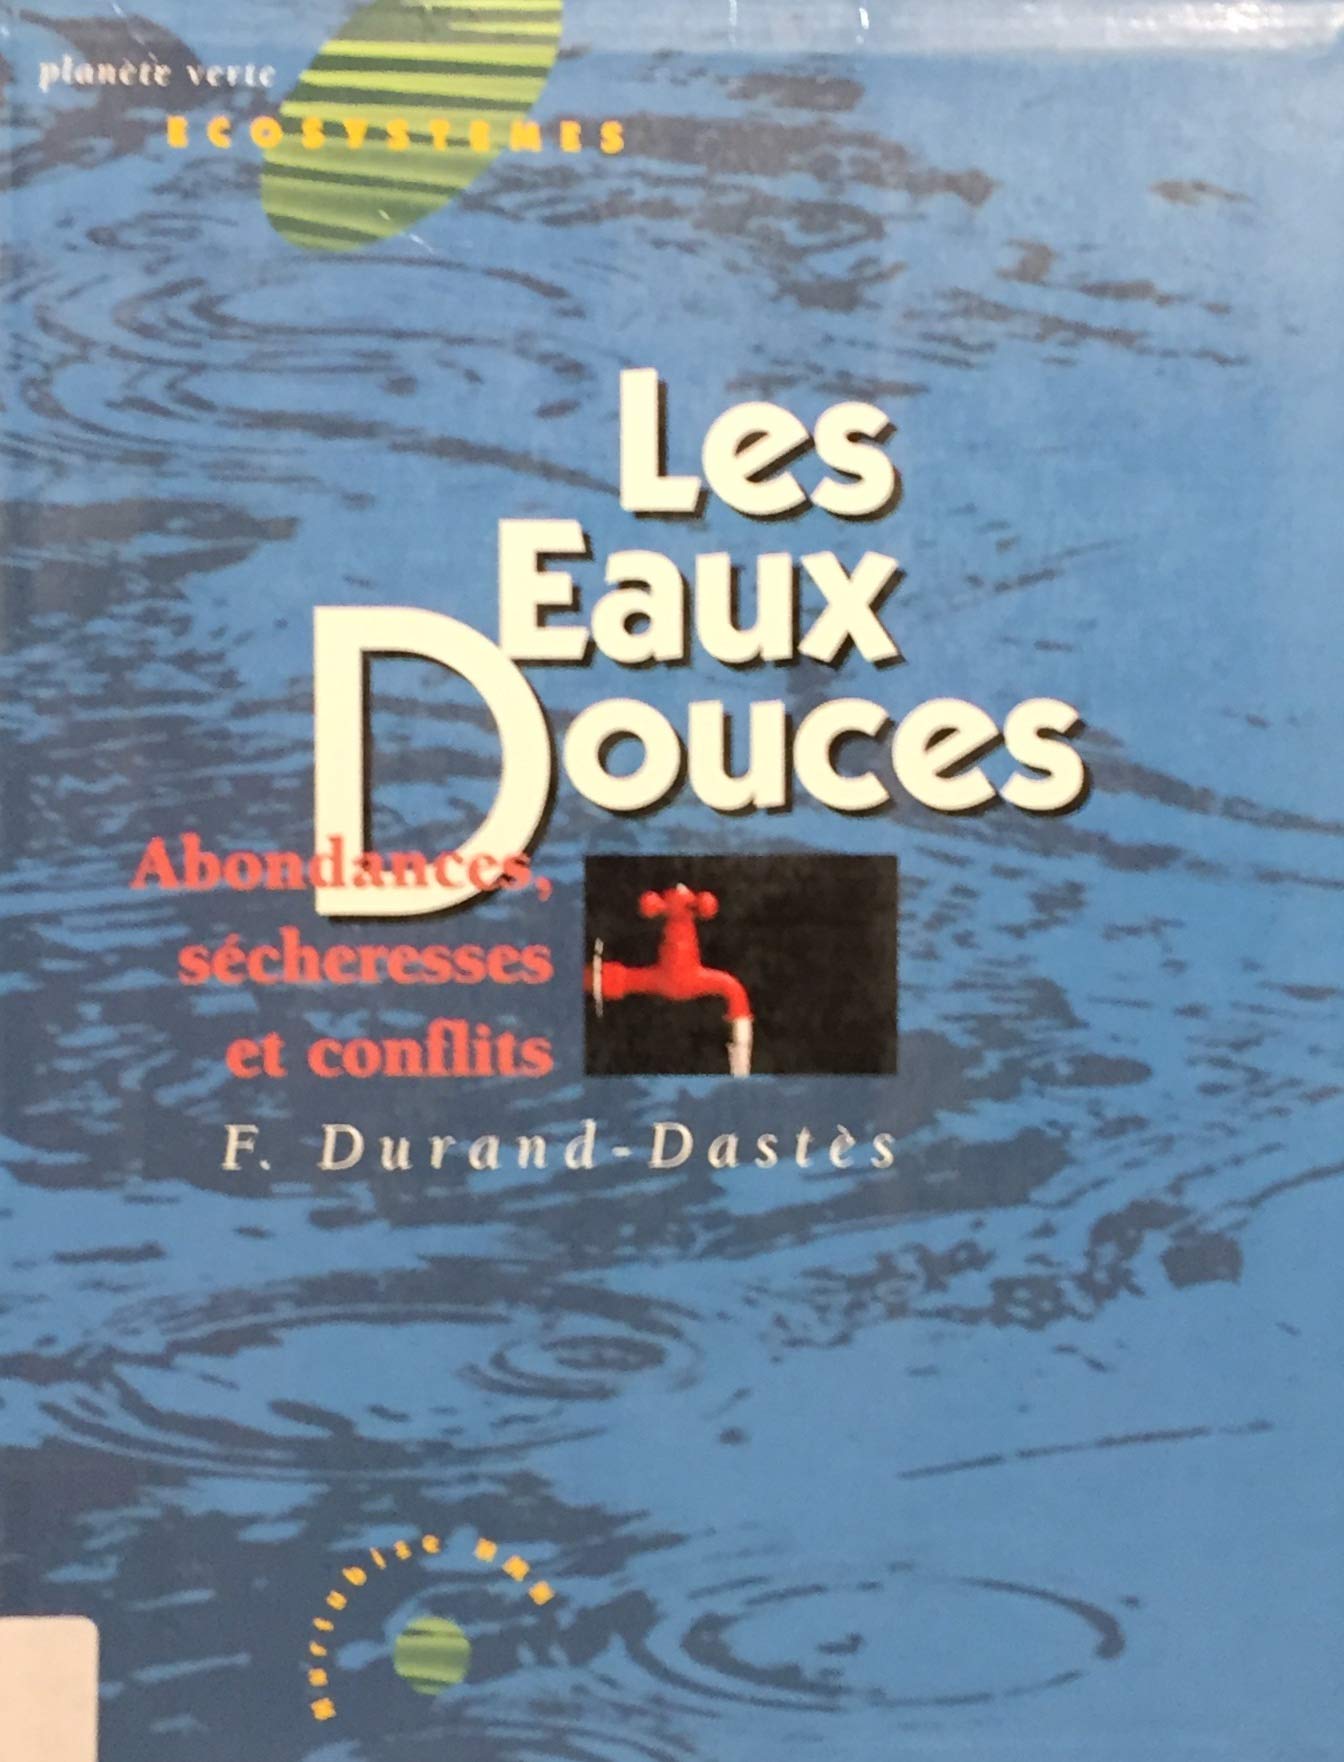 Livre ISBN 2890459551 Écosystèmes : Les Eaux Douces (François Durand-Dastes)